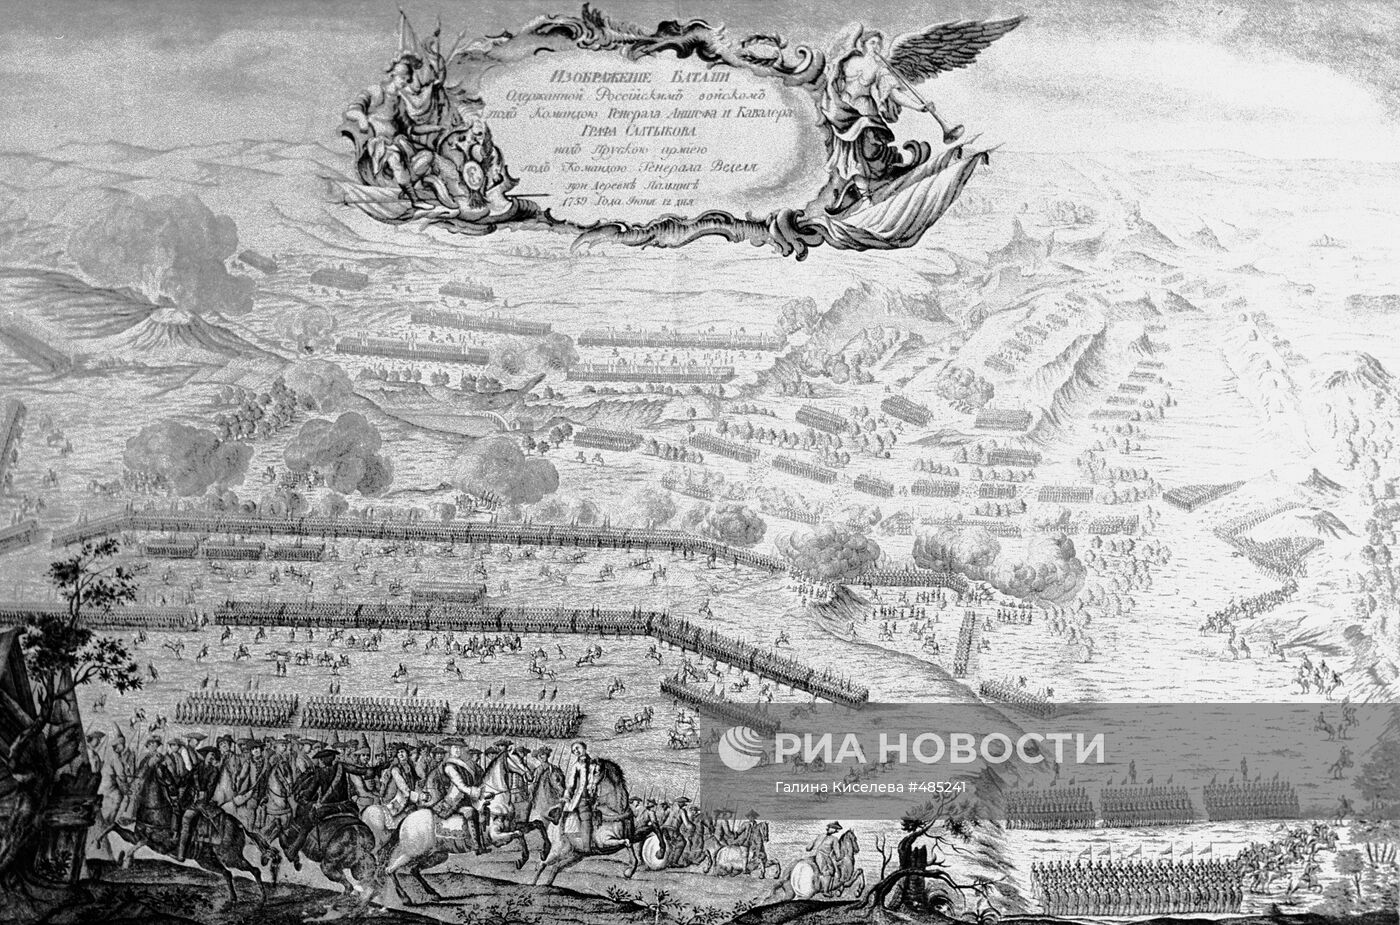 "Битва при Пальциге 12 июня 1759 года"